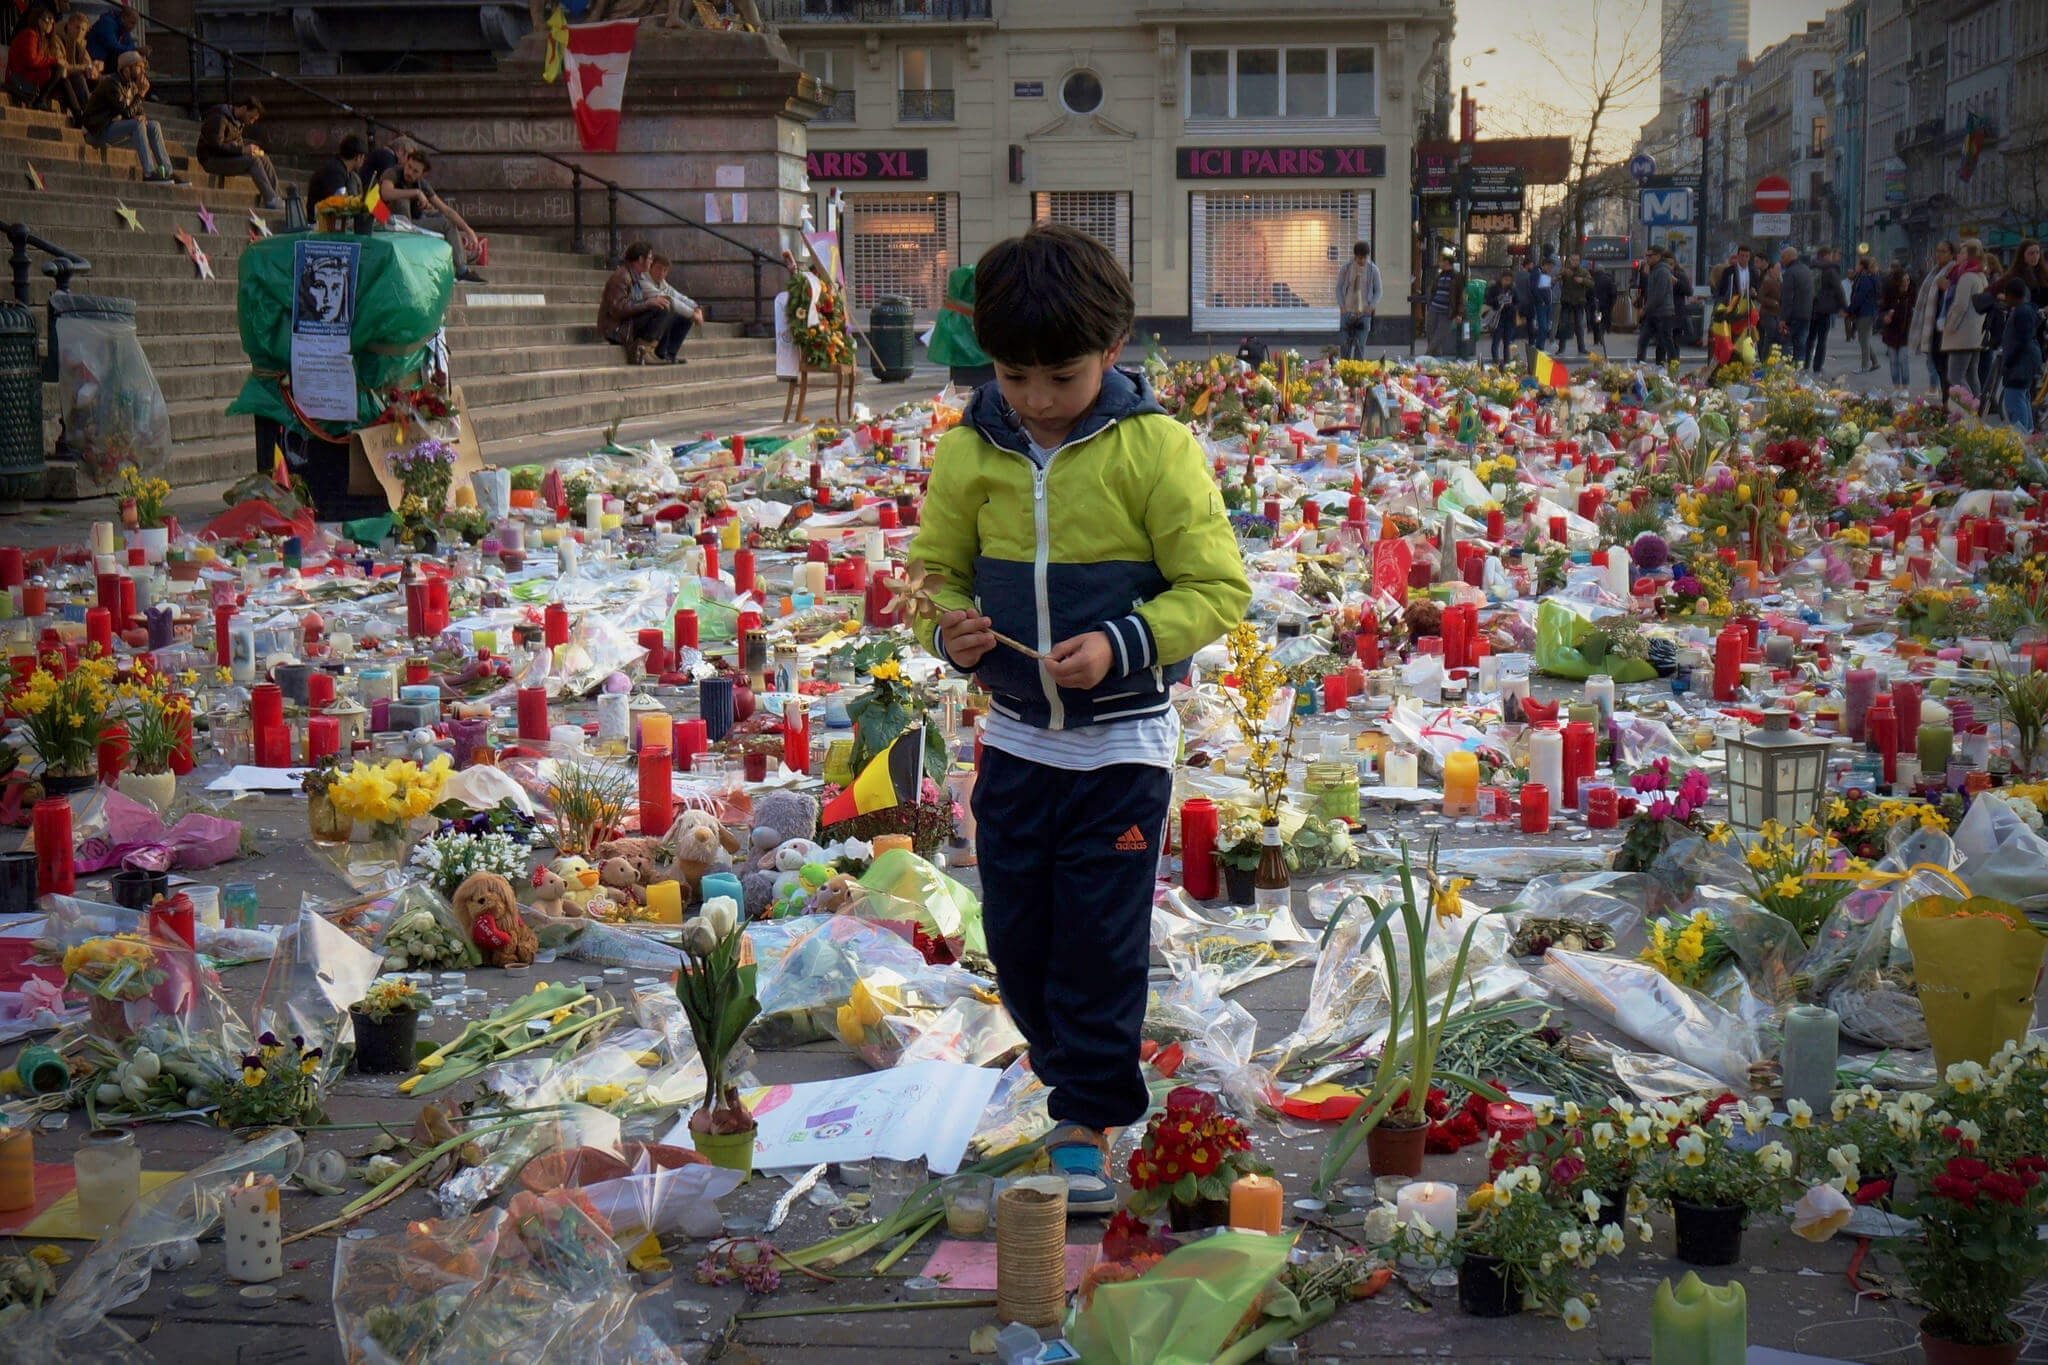 Een jongen in Brussel vlak na de aanslag op Zaventem in maart 2016 © Ronan Shenhav / Flickr